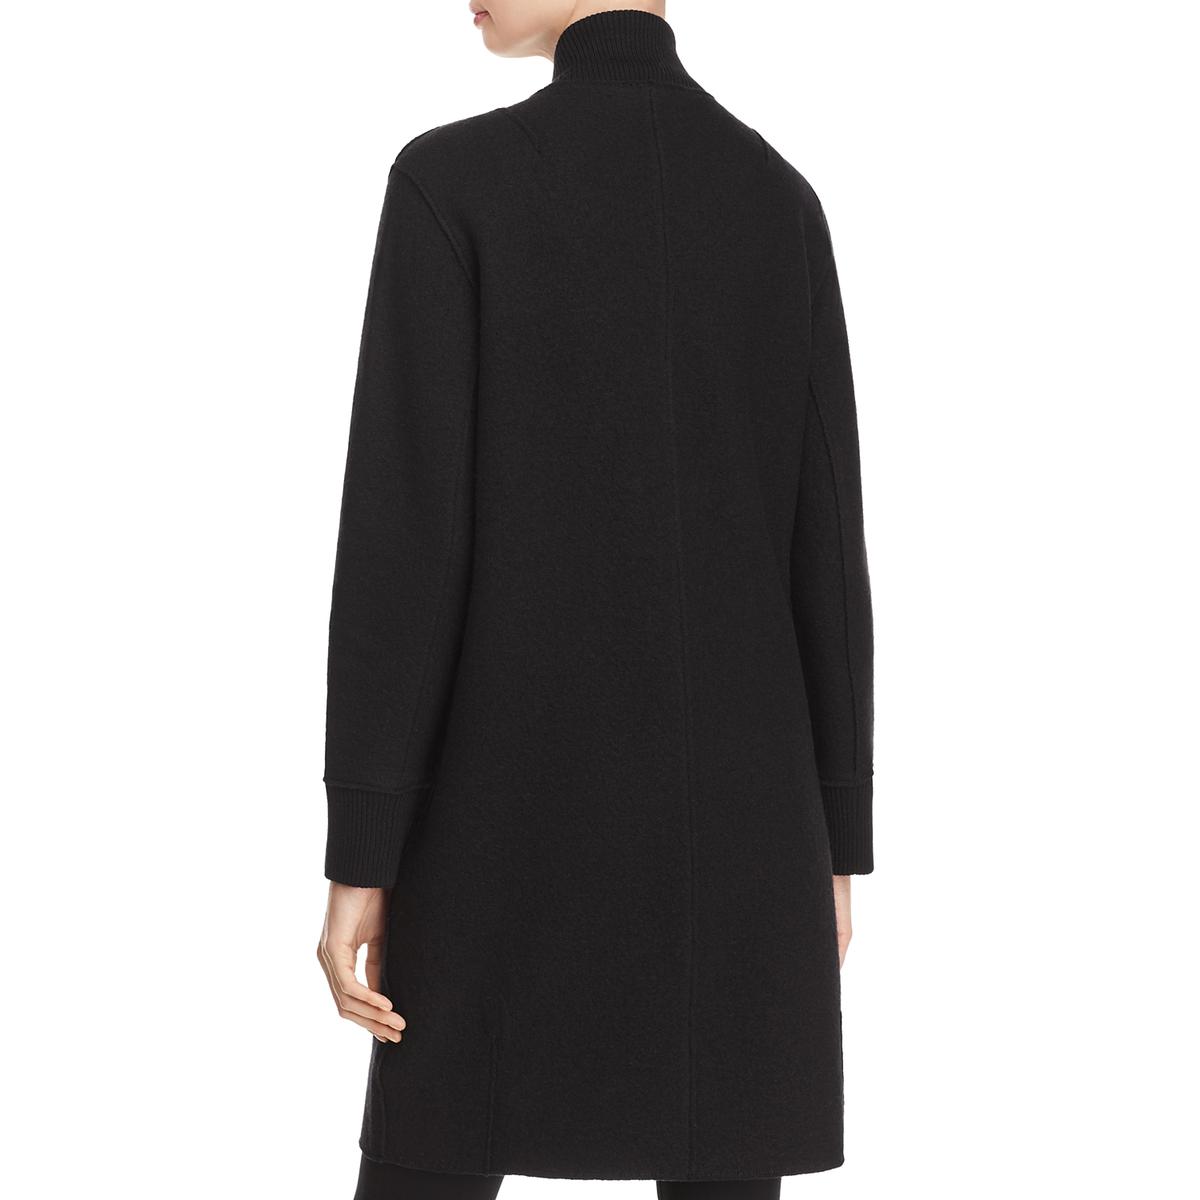 Eileen Fisher Womens Black Winter Long Warm Wool Coat Outerwear S BHFO ...